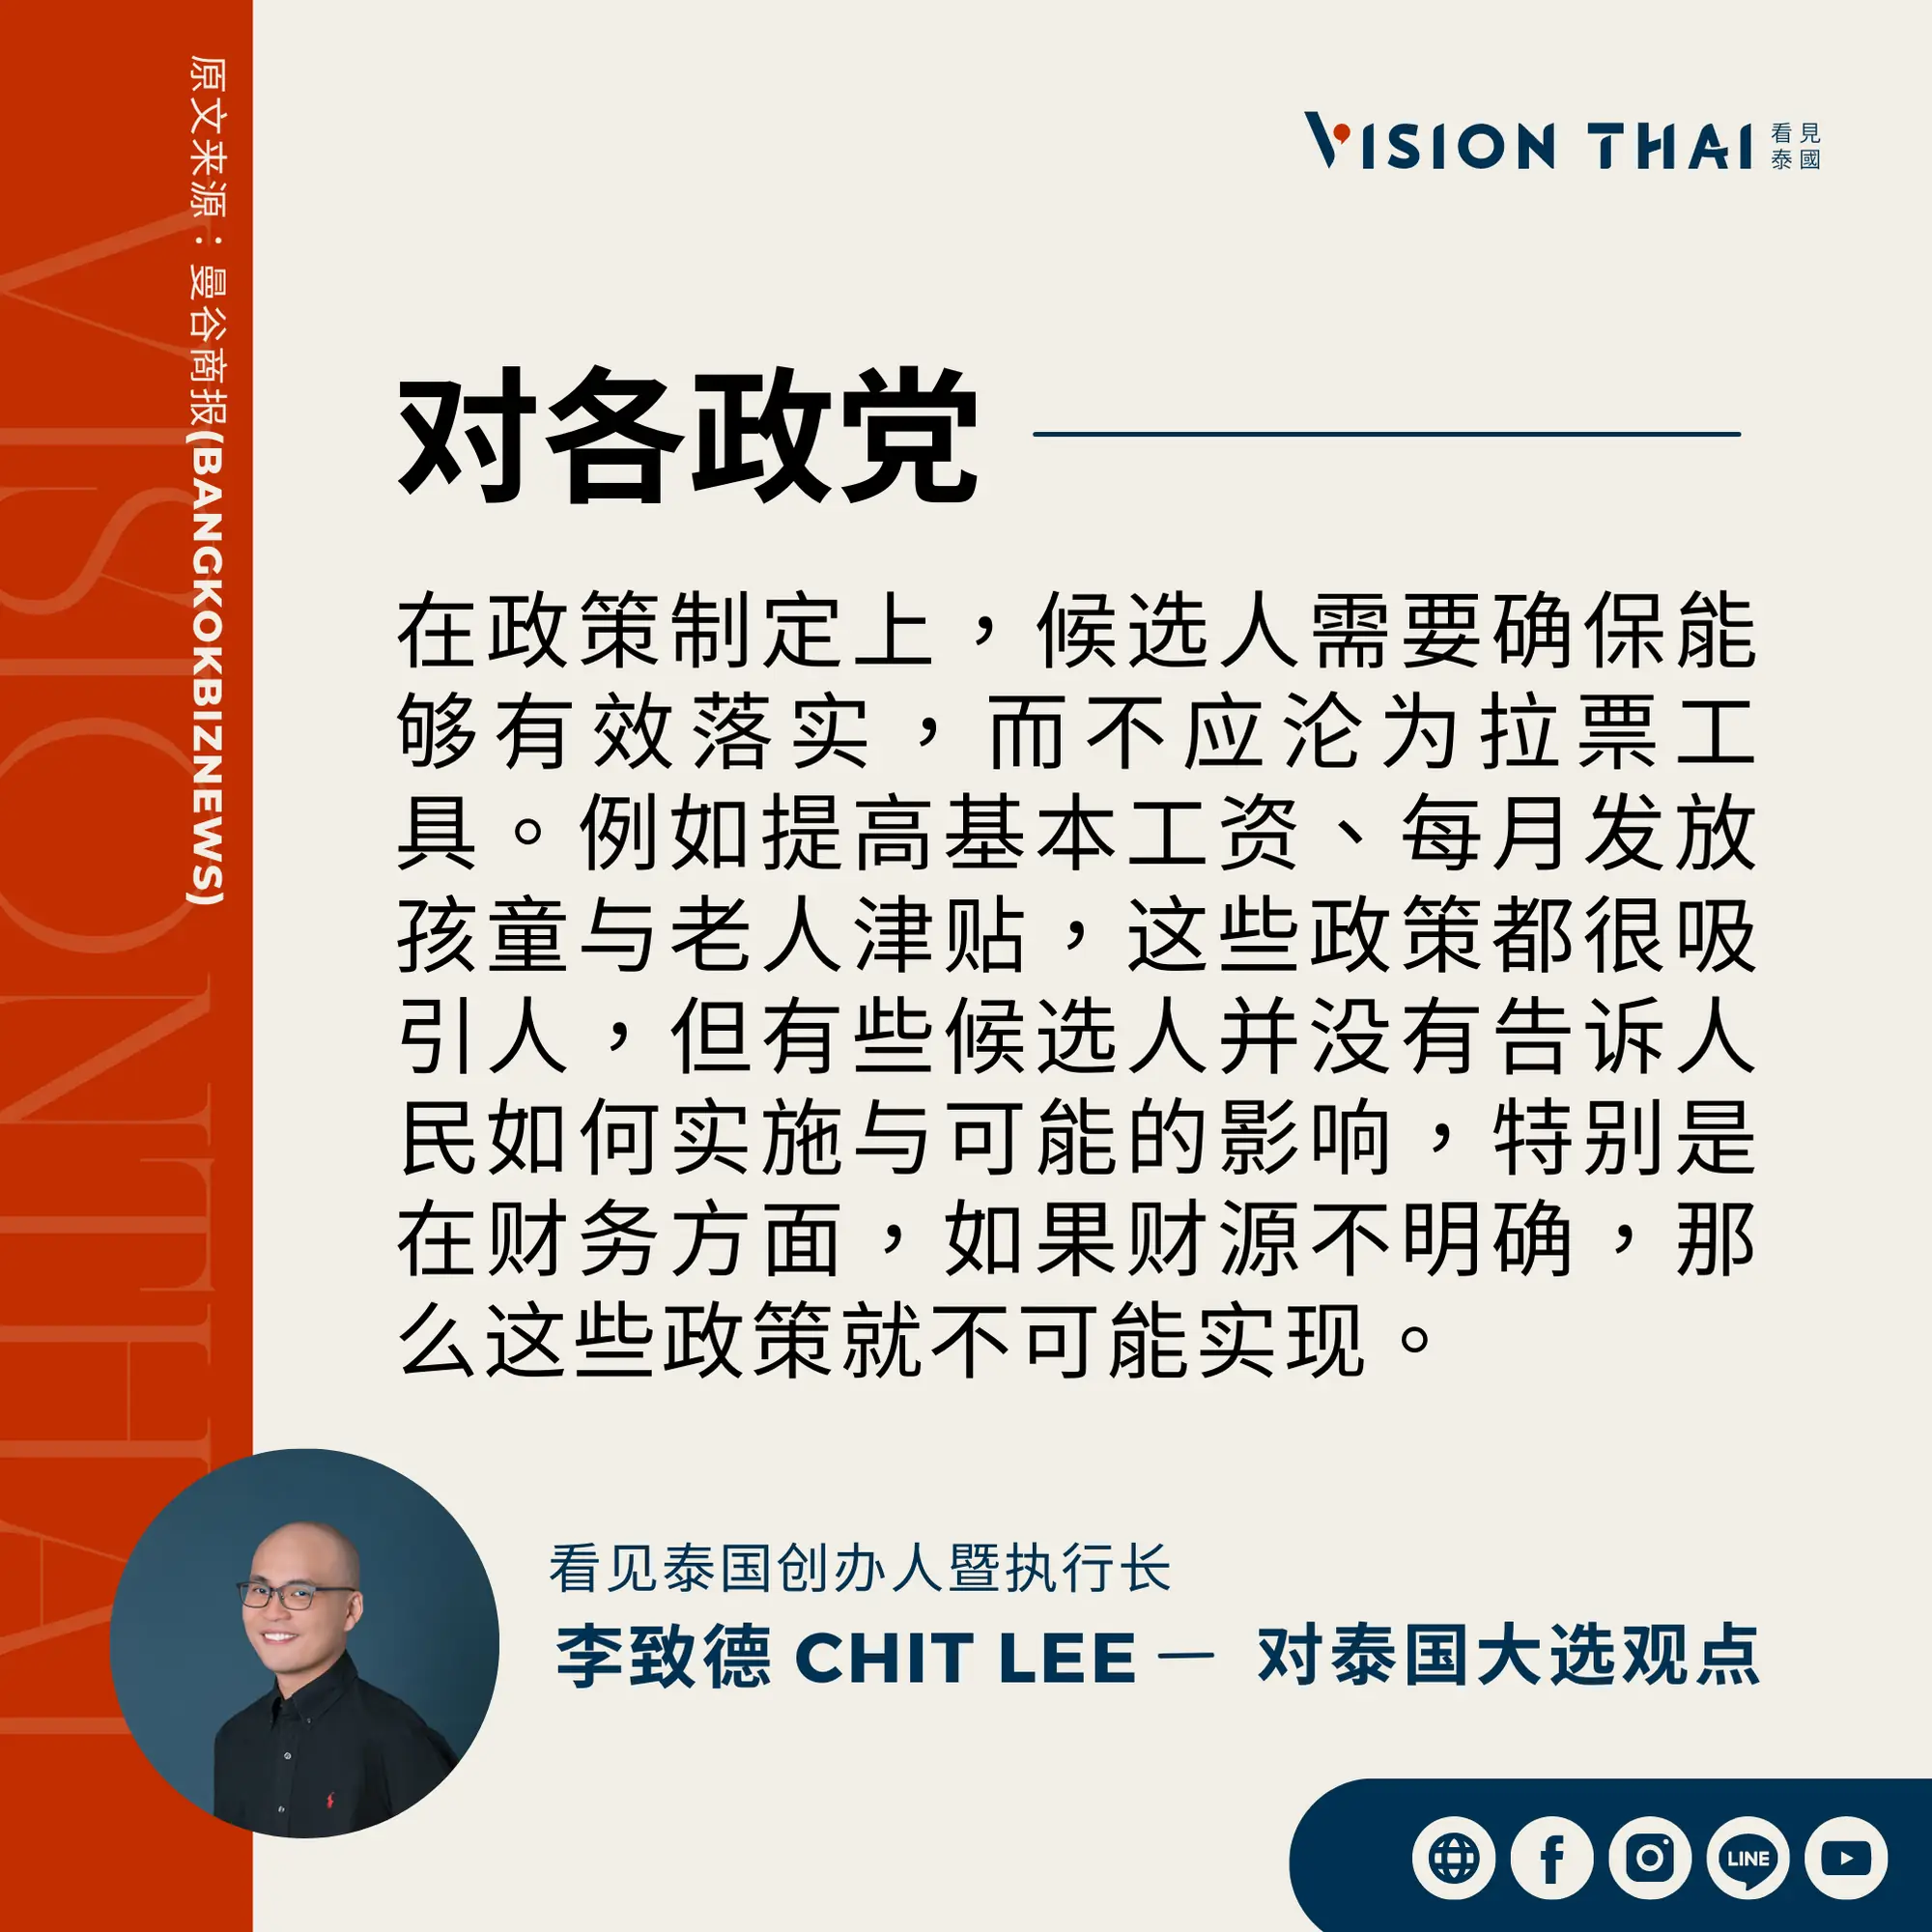 《曼谷商报》采访Vision Thai 看见泰国媒体创办人暨执行长李致德(Chit Lee)对泰国各政党的期许（来源：看见泰国制图）